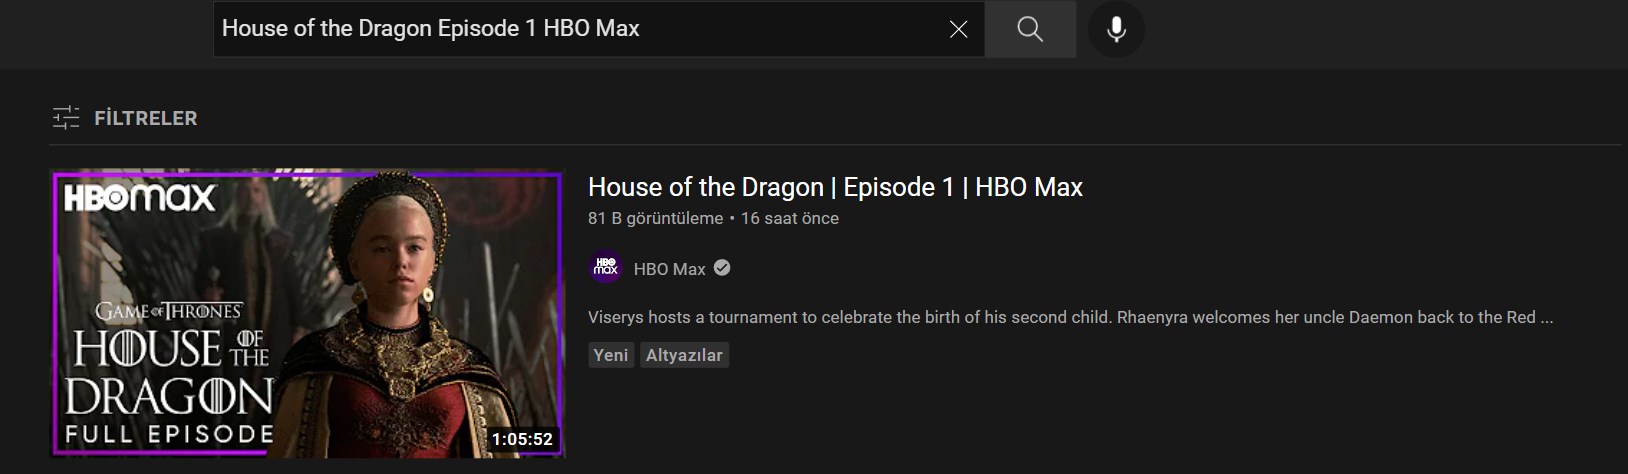 House of the Dragon'ın ilk bölümü YouTube'da yayınlandı